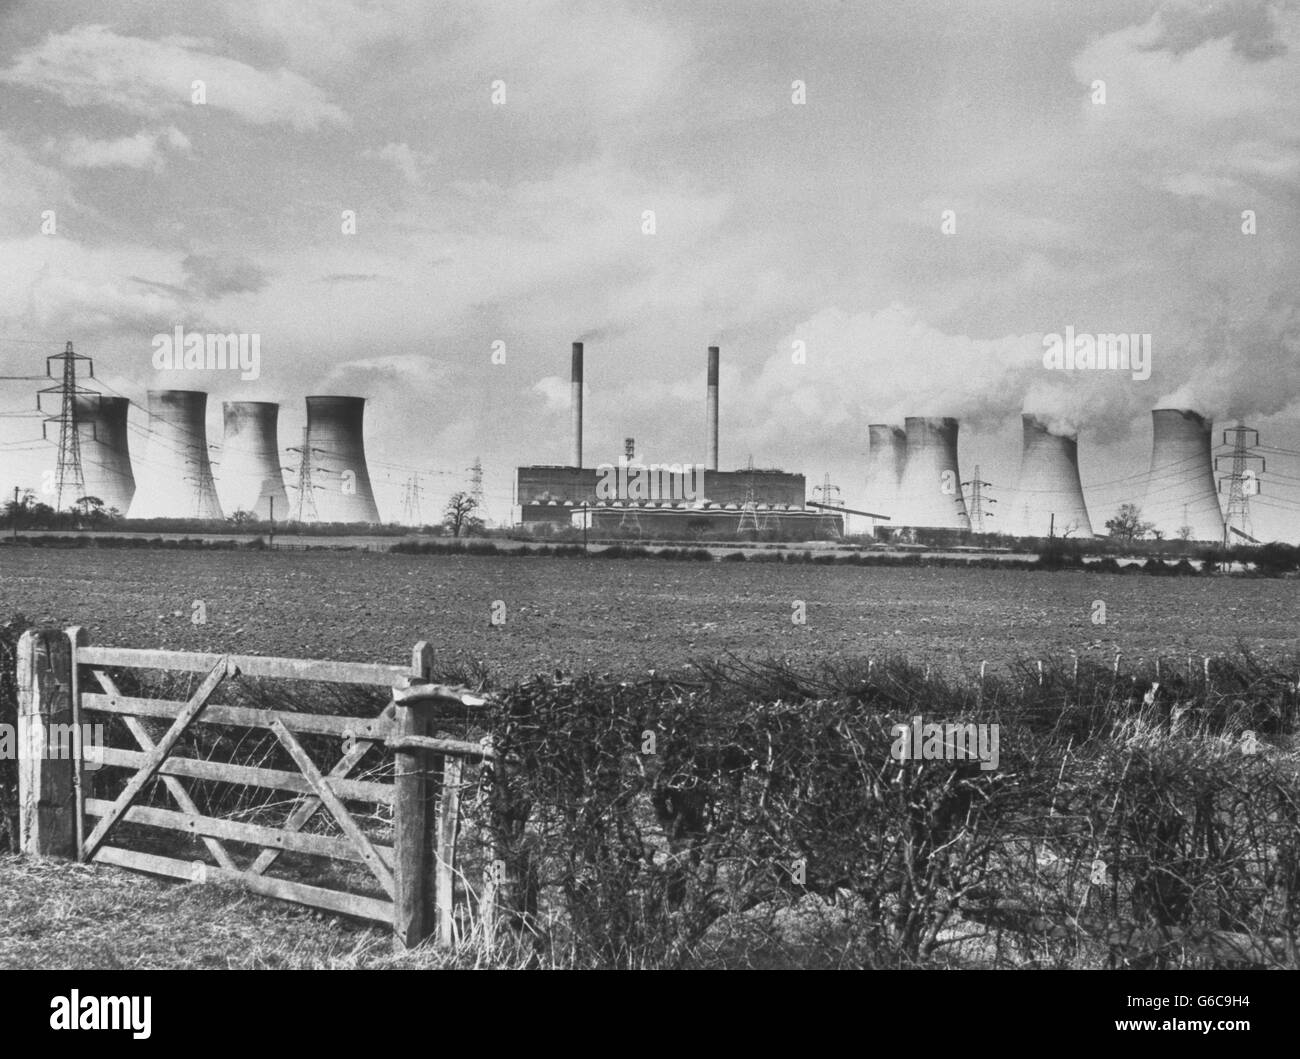 Das Kraftwerk West Burton, das von der Region Midlands des Central Electricity Generating Board (CEGB) betrieben wird, war das erste der neuen 2,000-Megawatt-Kraftwerke des CEGB, das alle vier seiner 500-Megawatt-Einheiten vollständig in betrieb genommen hat. Archive-pa148903-14 Stockfoto